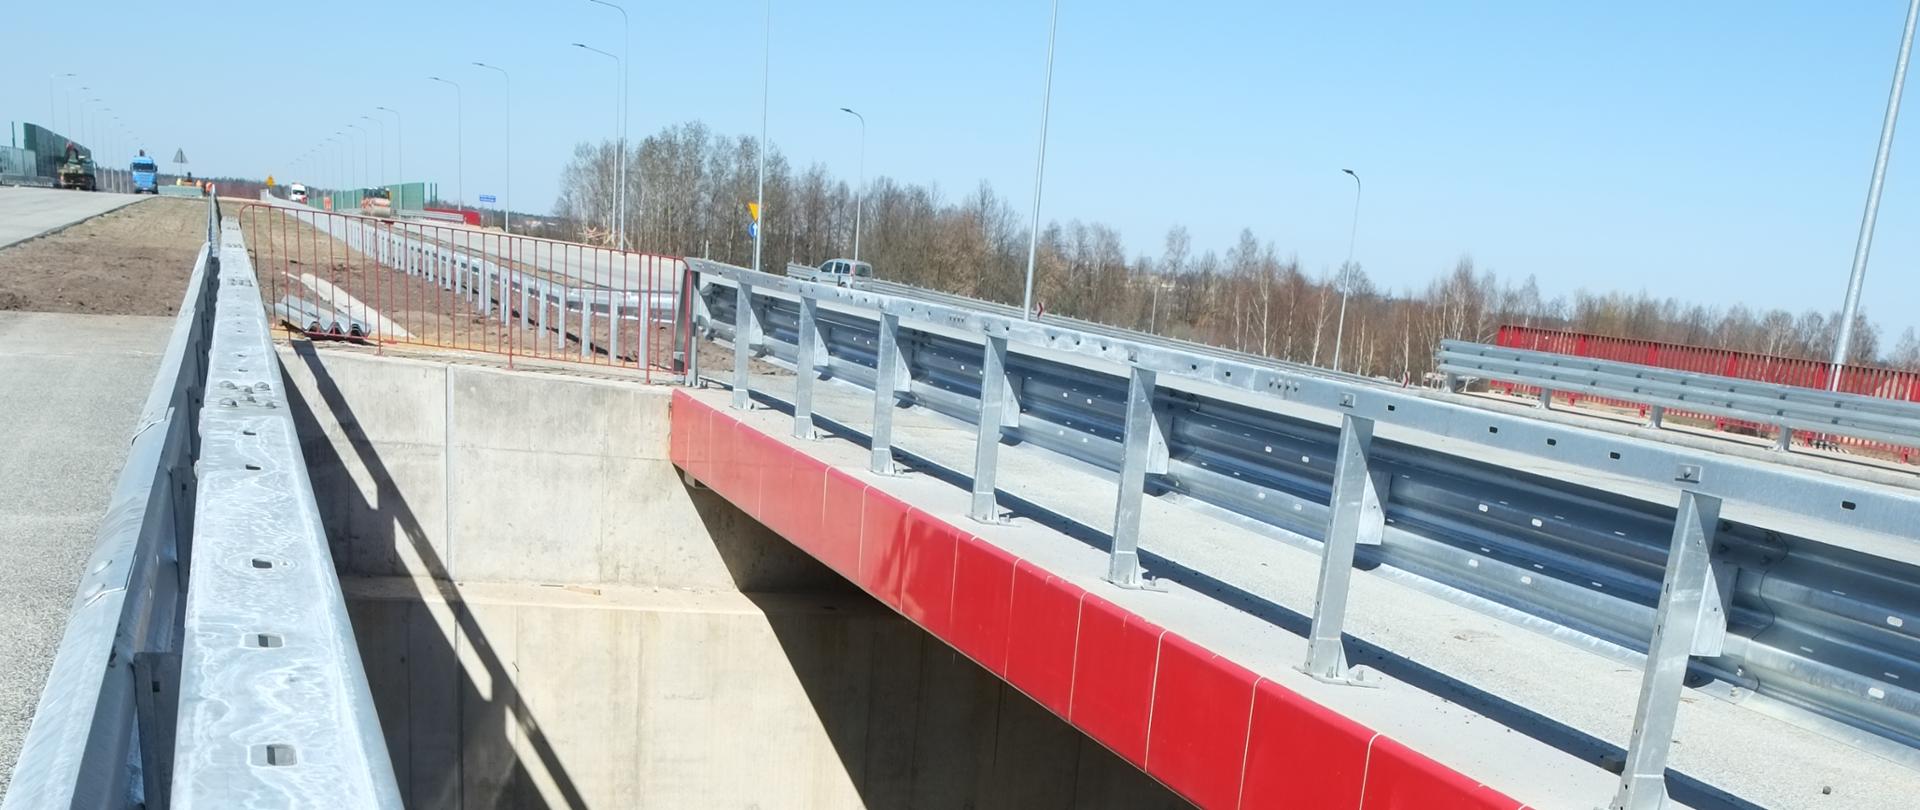 Fotografia przedstawia dwa równoległe obiekty inżynierskie. Wyposażone są w mostowe bariery ochronne. Cokół pomostu został wykonany w kolorze czerwonym.